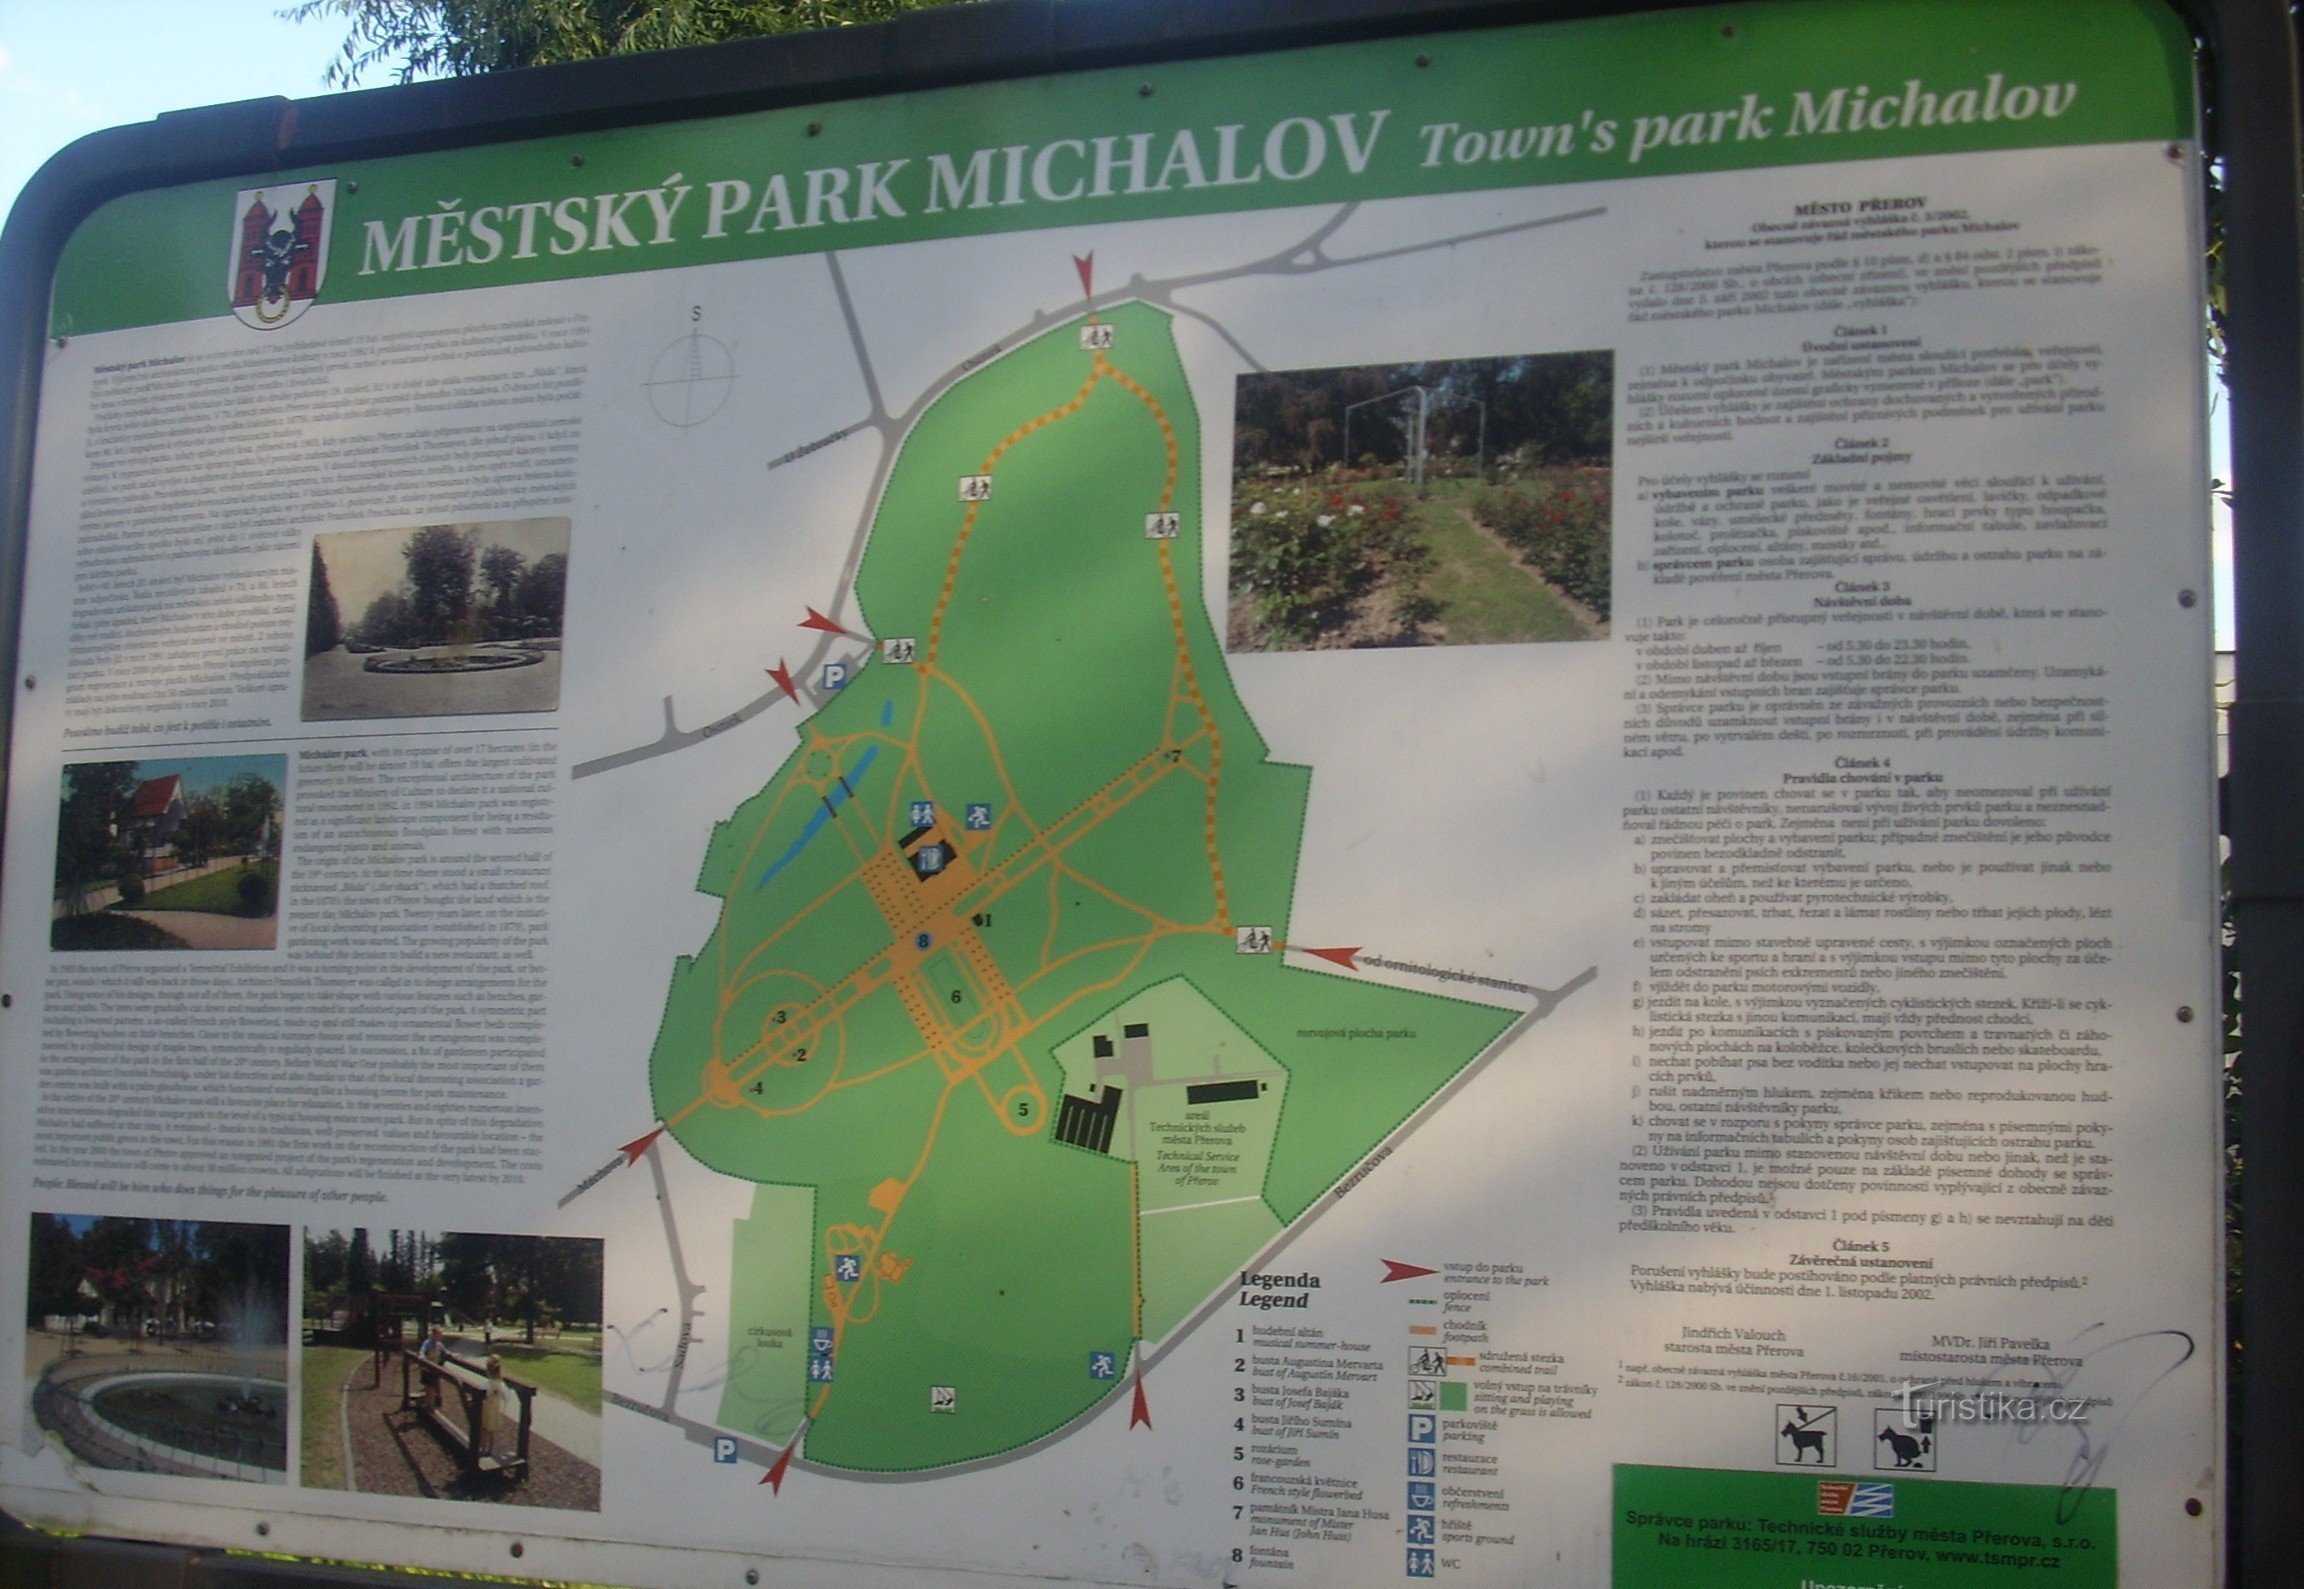 Michalov City Park in Přerov